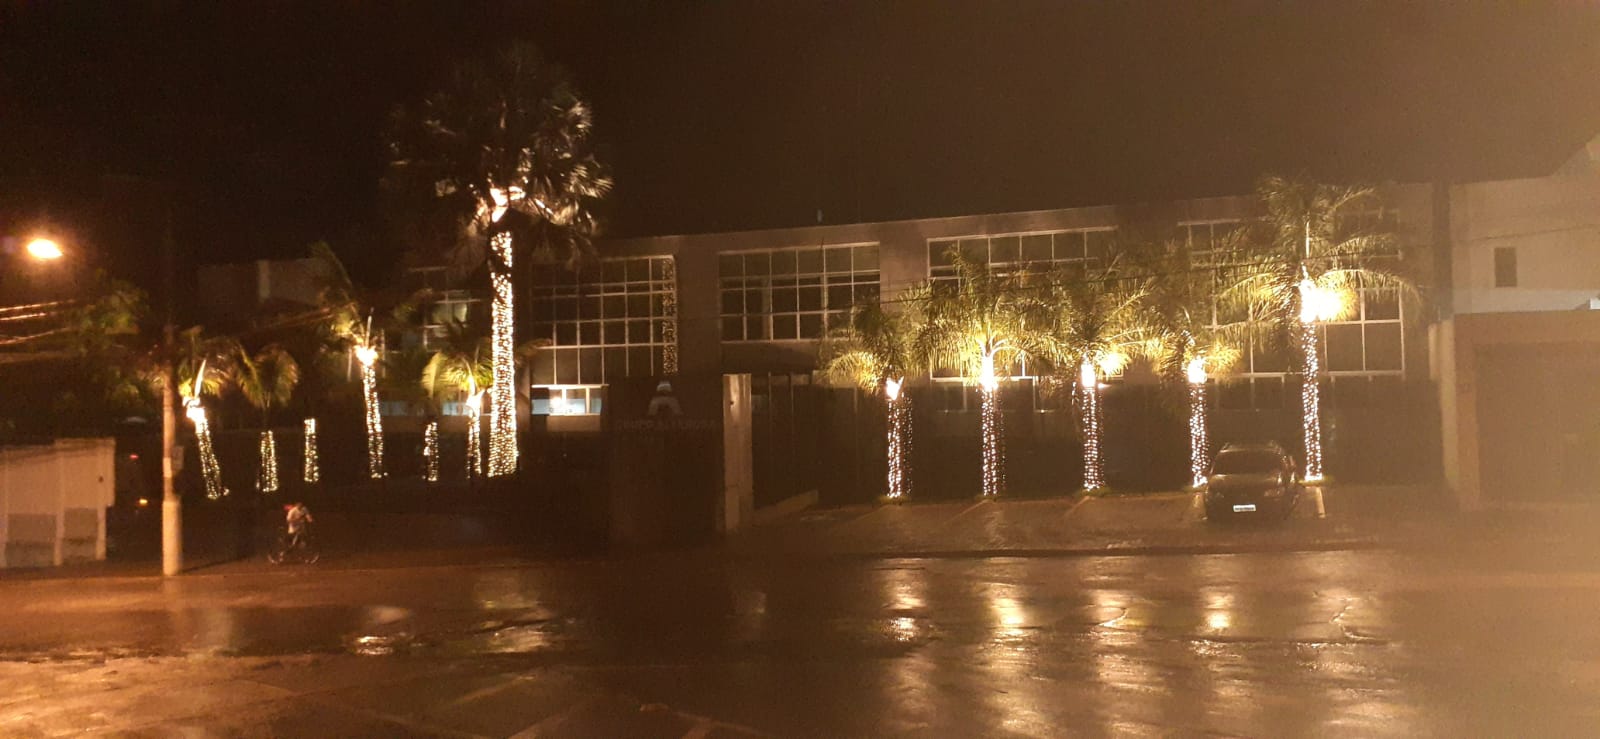 Iluminação natalina da Câmara Municipal será inaugurada nesta quarta-feira  (30) - Portal Pebinha de Açúcar - 16 anos